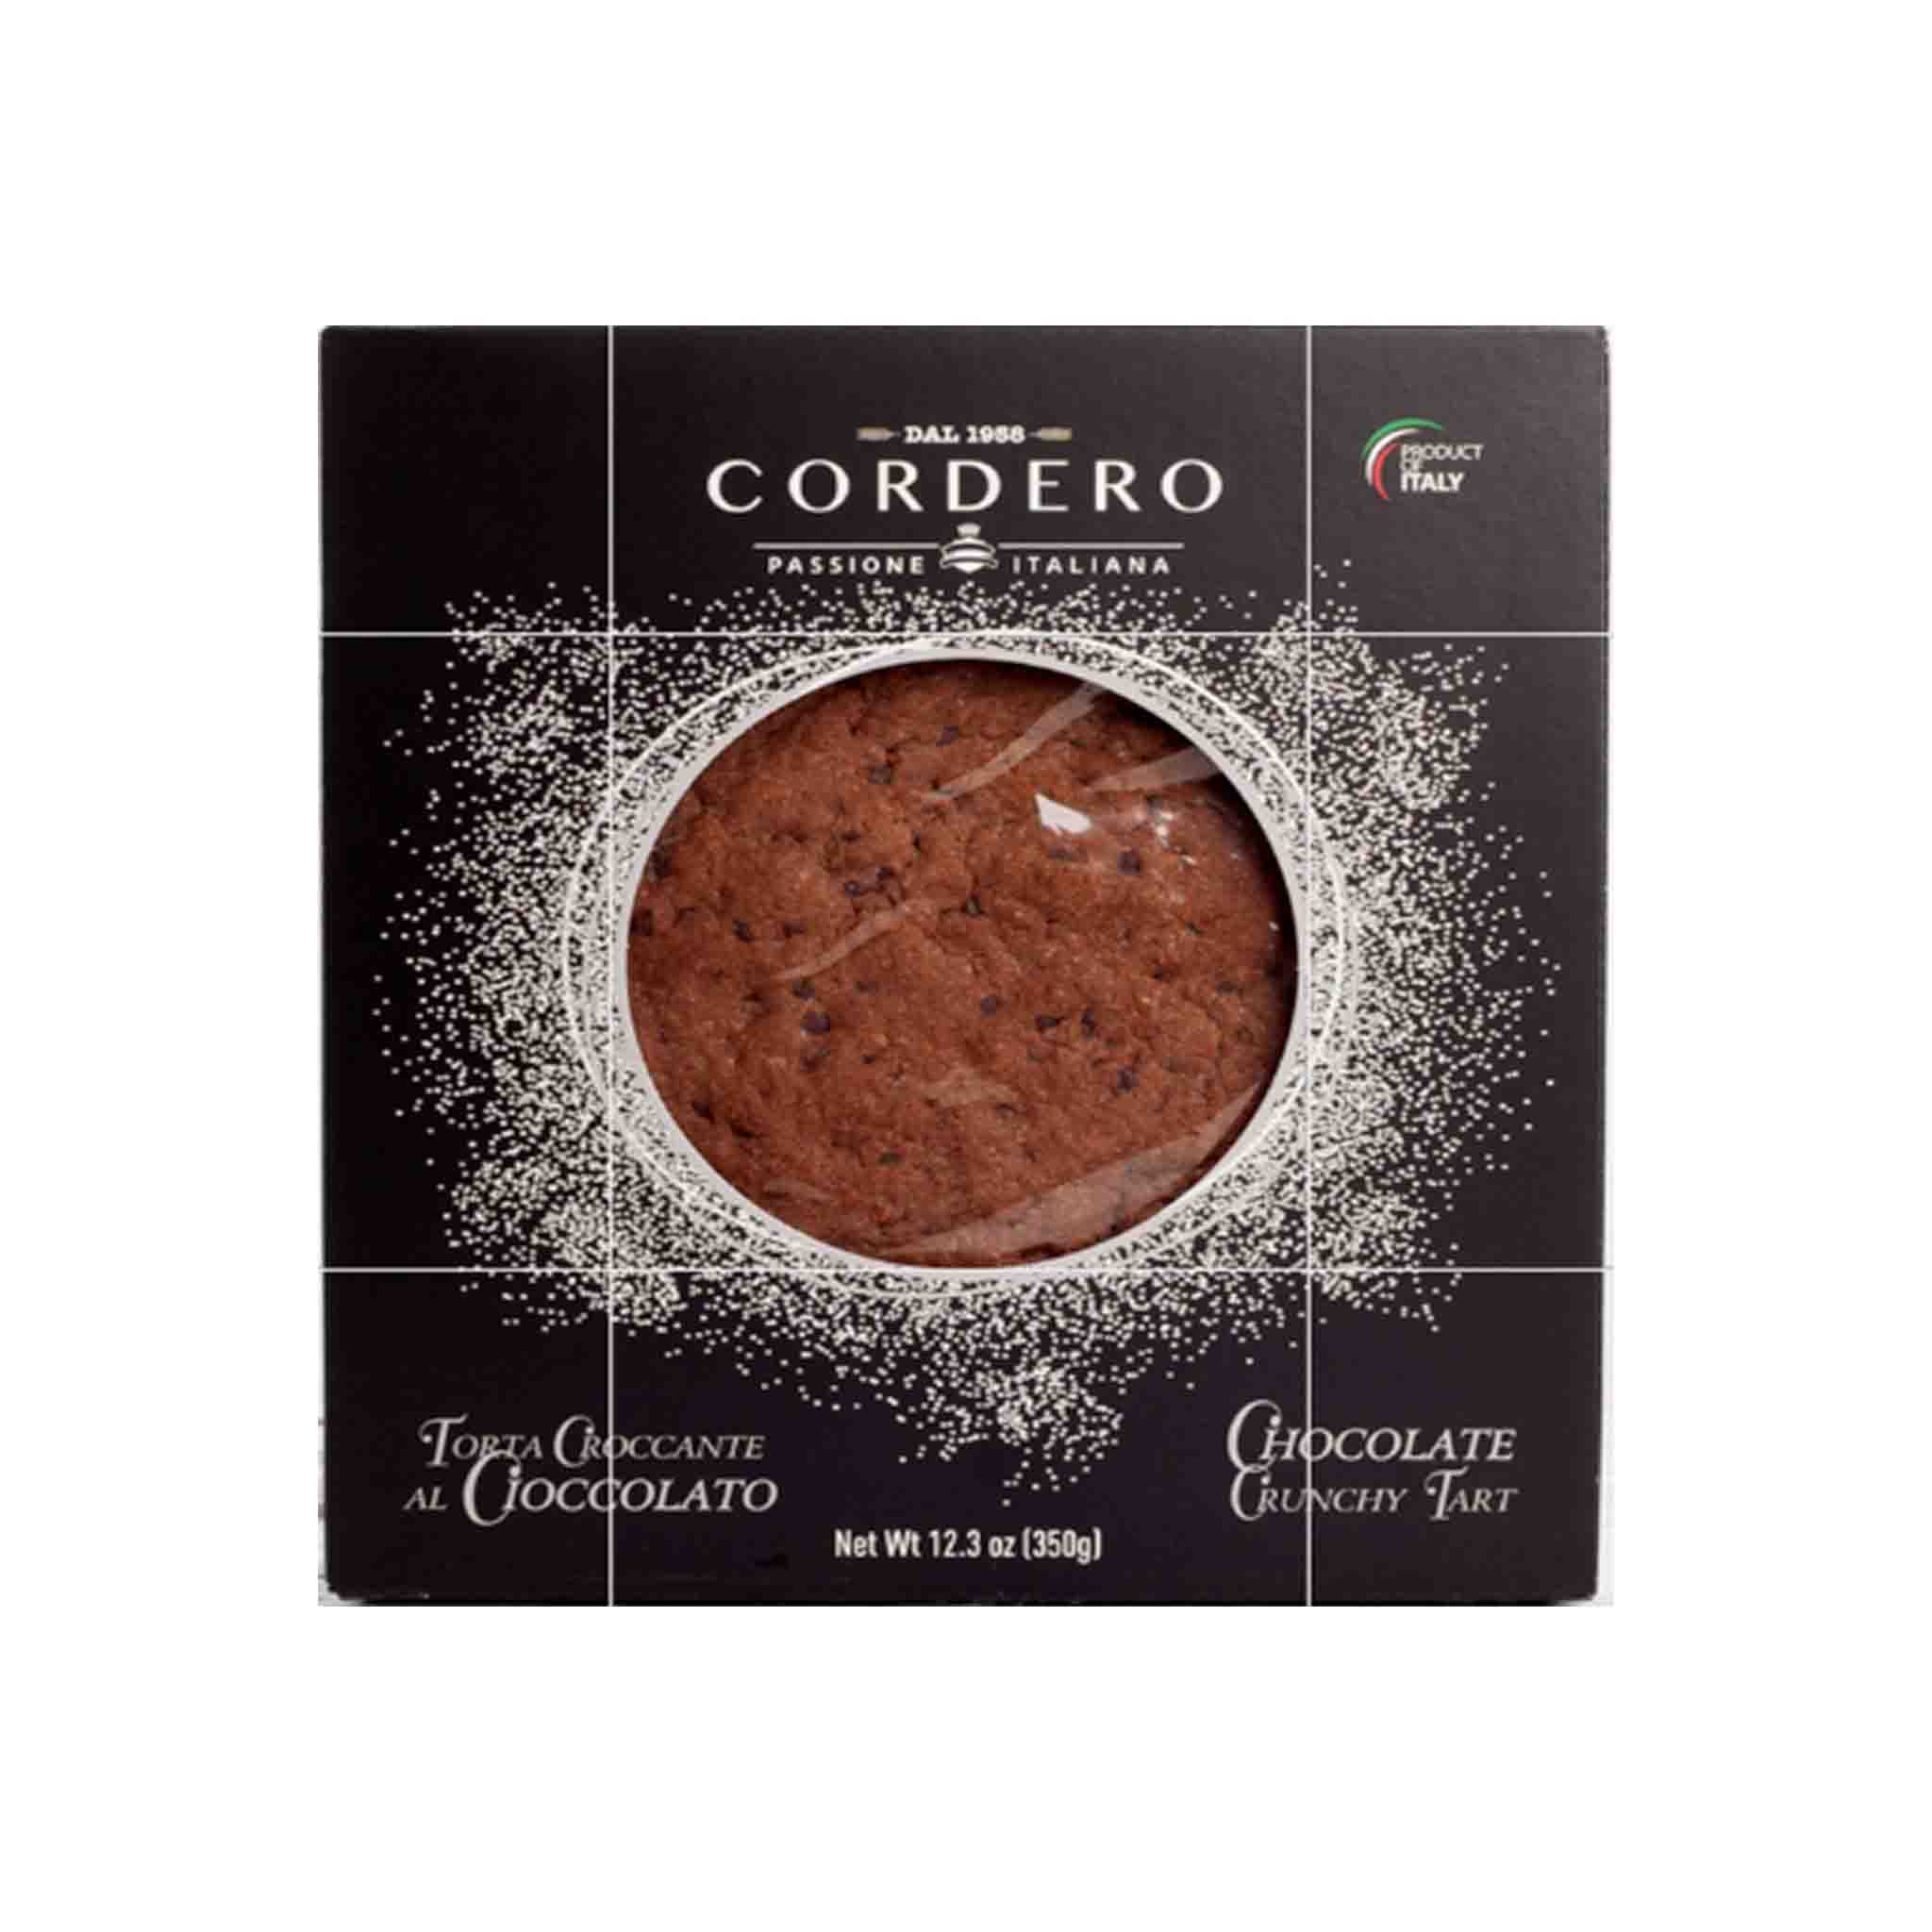 CORDERO CHOCOLATE CRUNCHY TART 350G